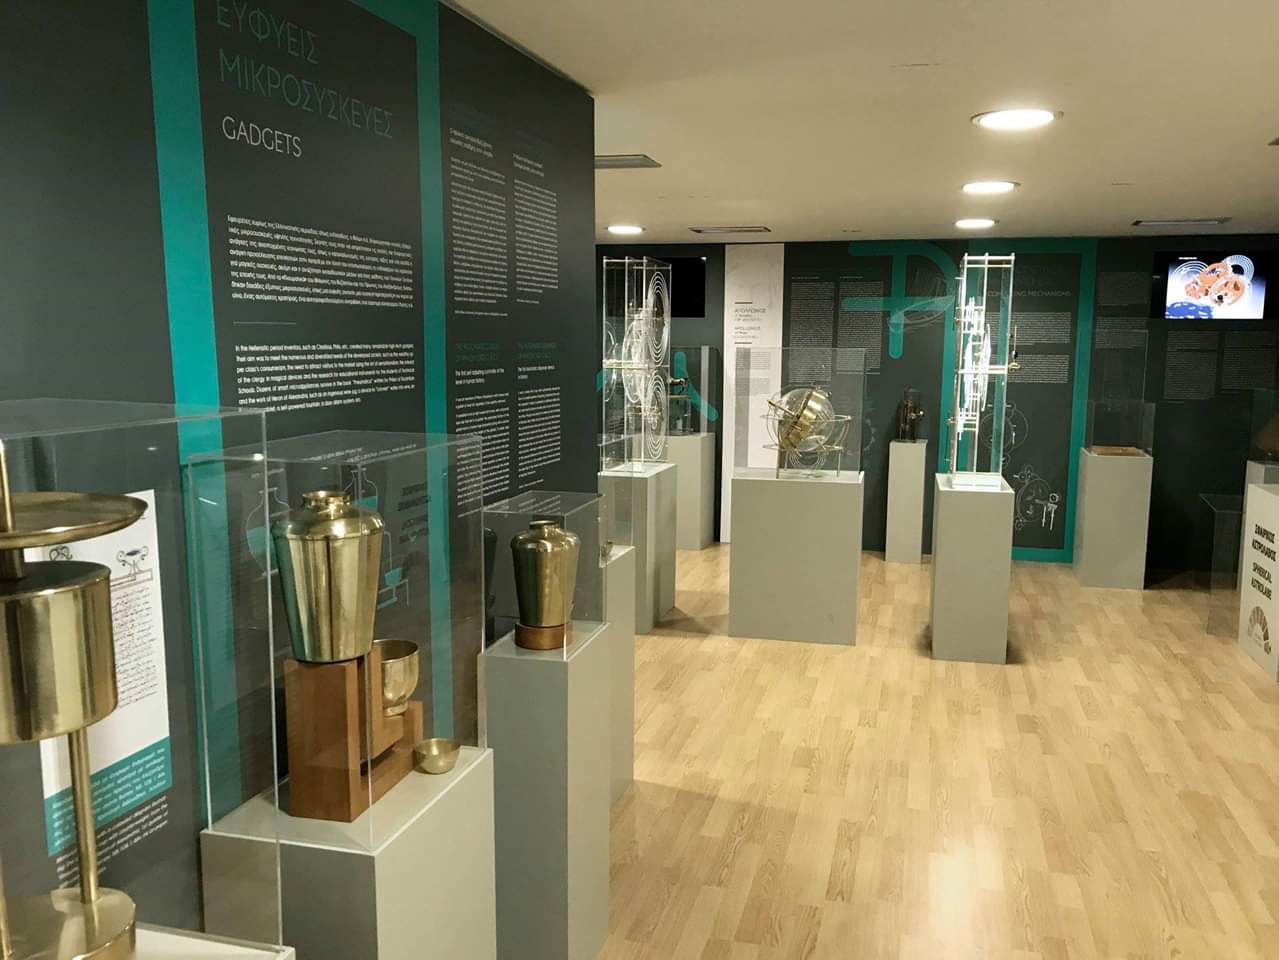  Υποψήφιο το Μουσείο Αρχαίας Ελληνικής Τεχνολογίας Κώστα Κοτσανά για το «Ευρωπαϊκό Μουσείο της χρονιάς 2019»